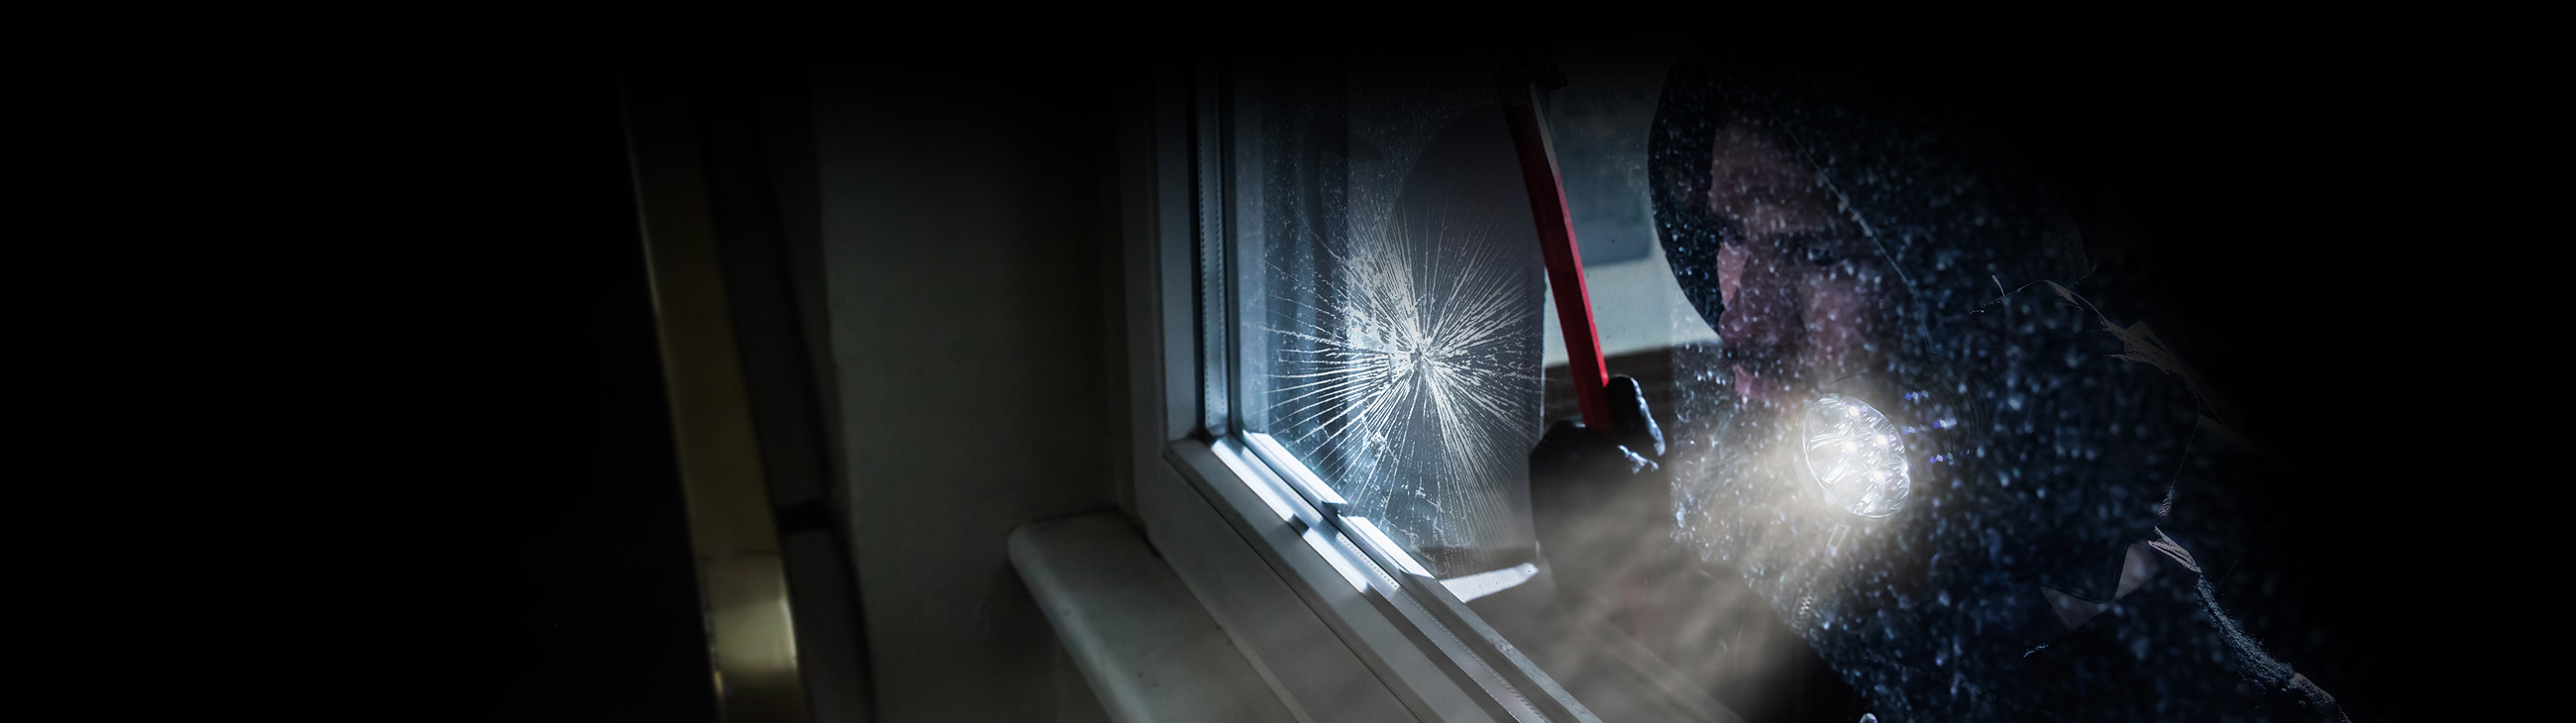 Intruder breaking glass window